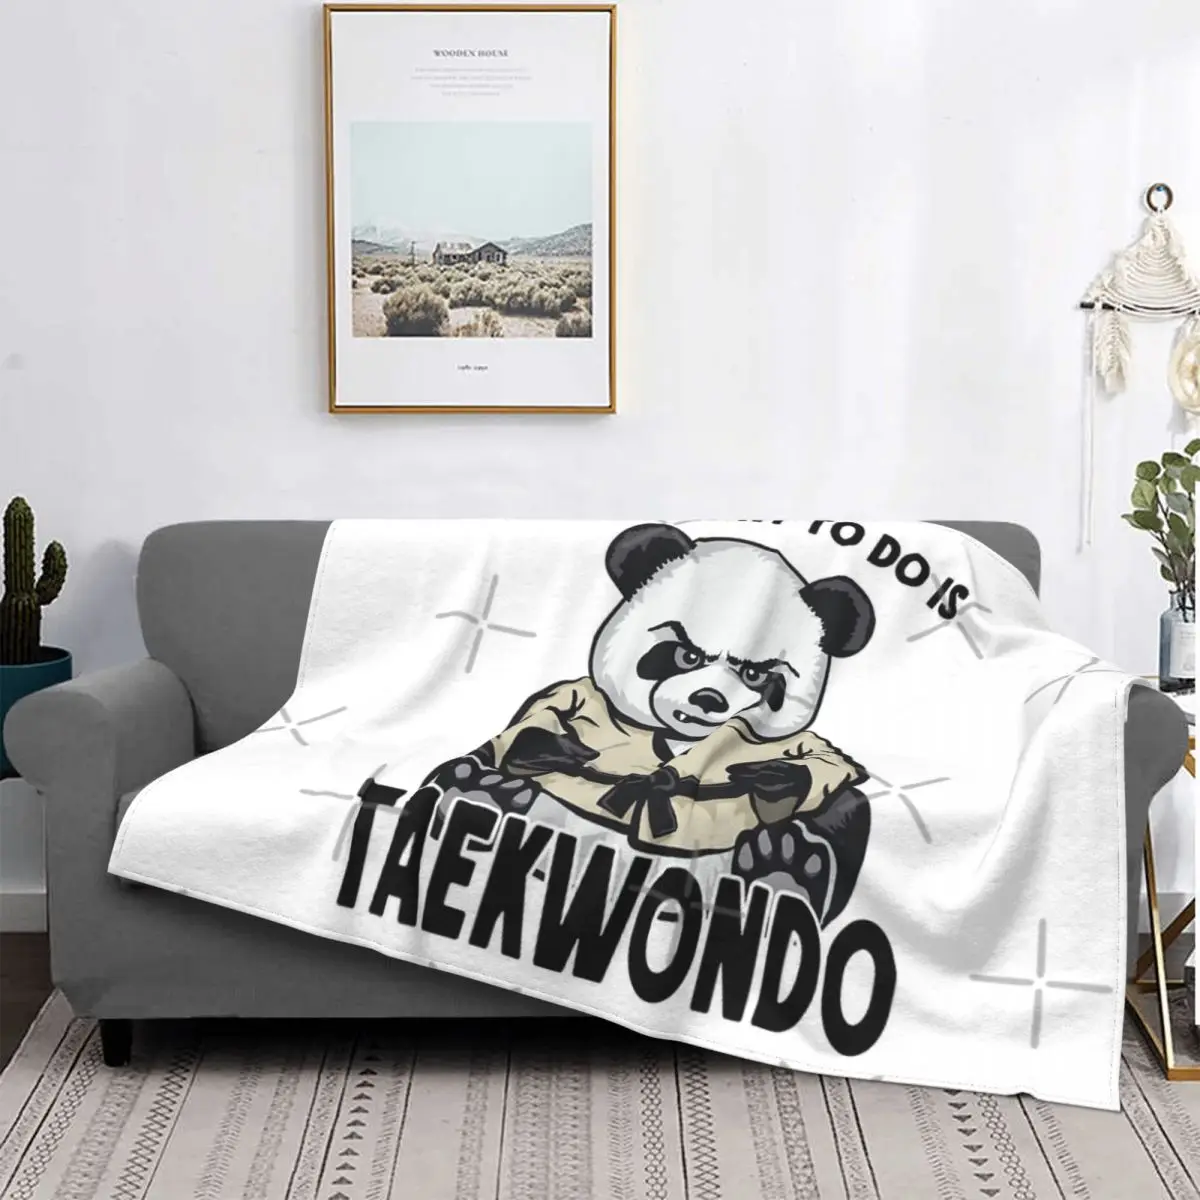 

Панда для тхэквондо, все, что я хочу, одеяло, покрывало для кровати, клетчатое покрывало, Детское покрывало